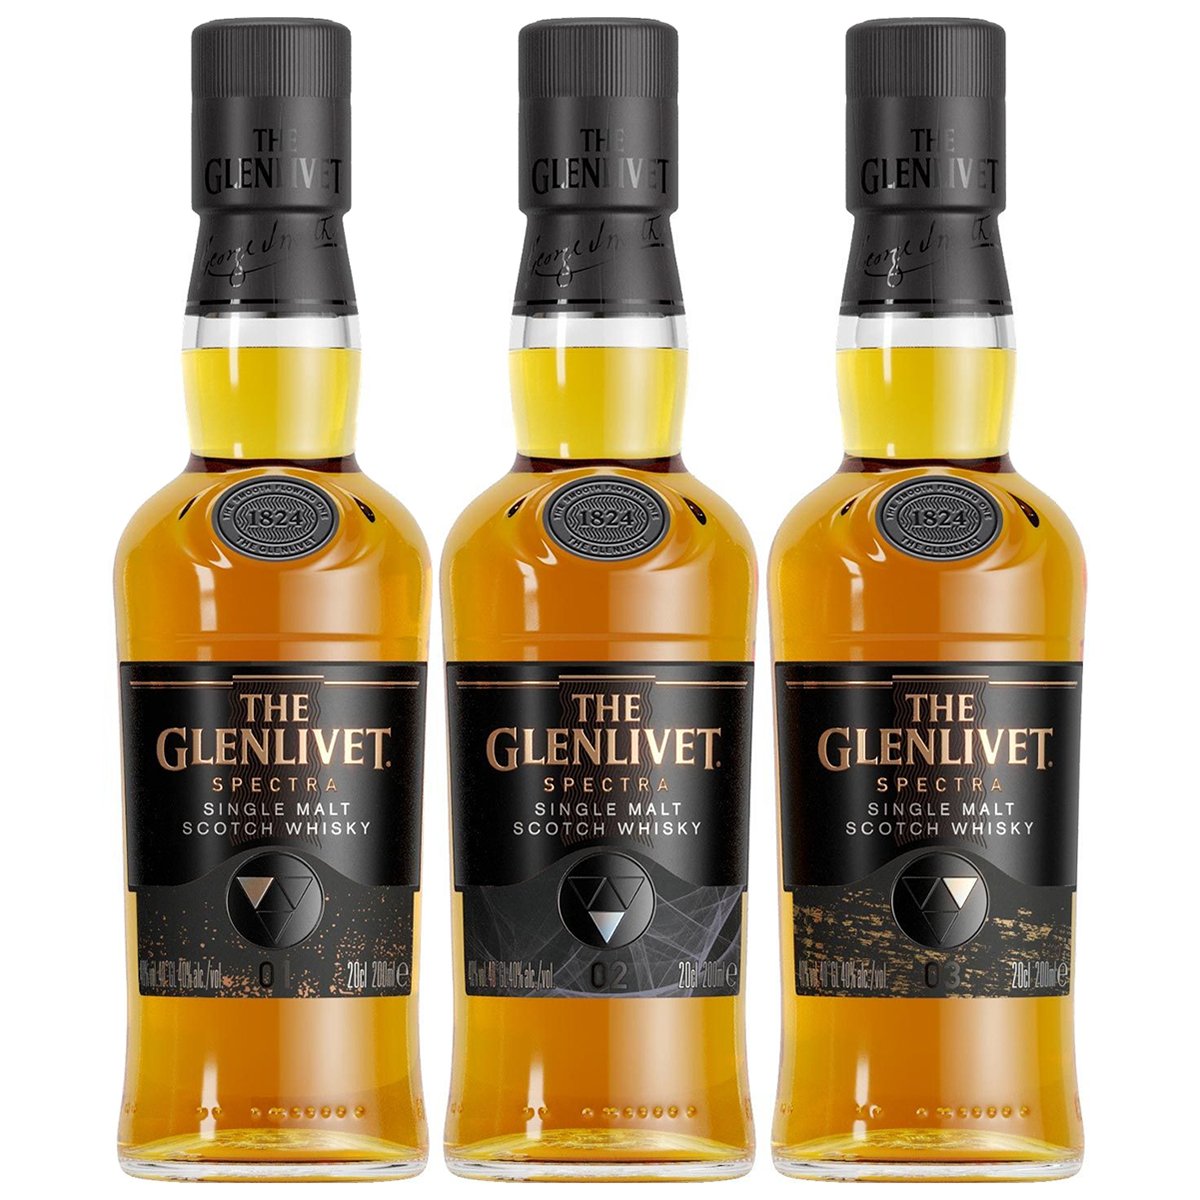 Glenlivet Spectra Scotch Whisky